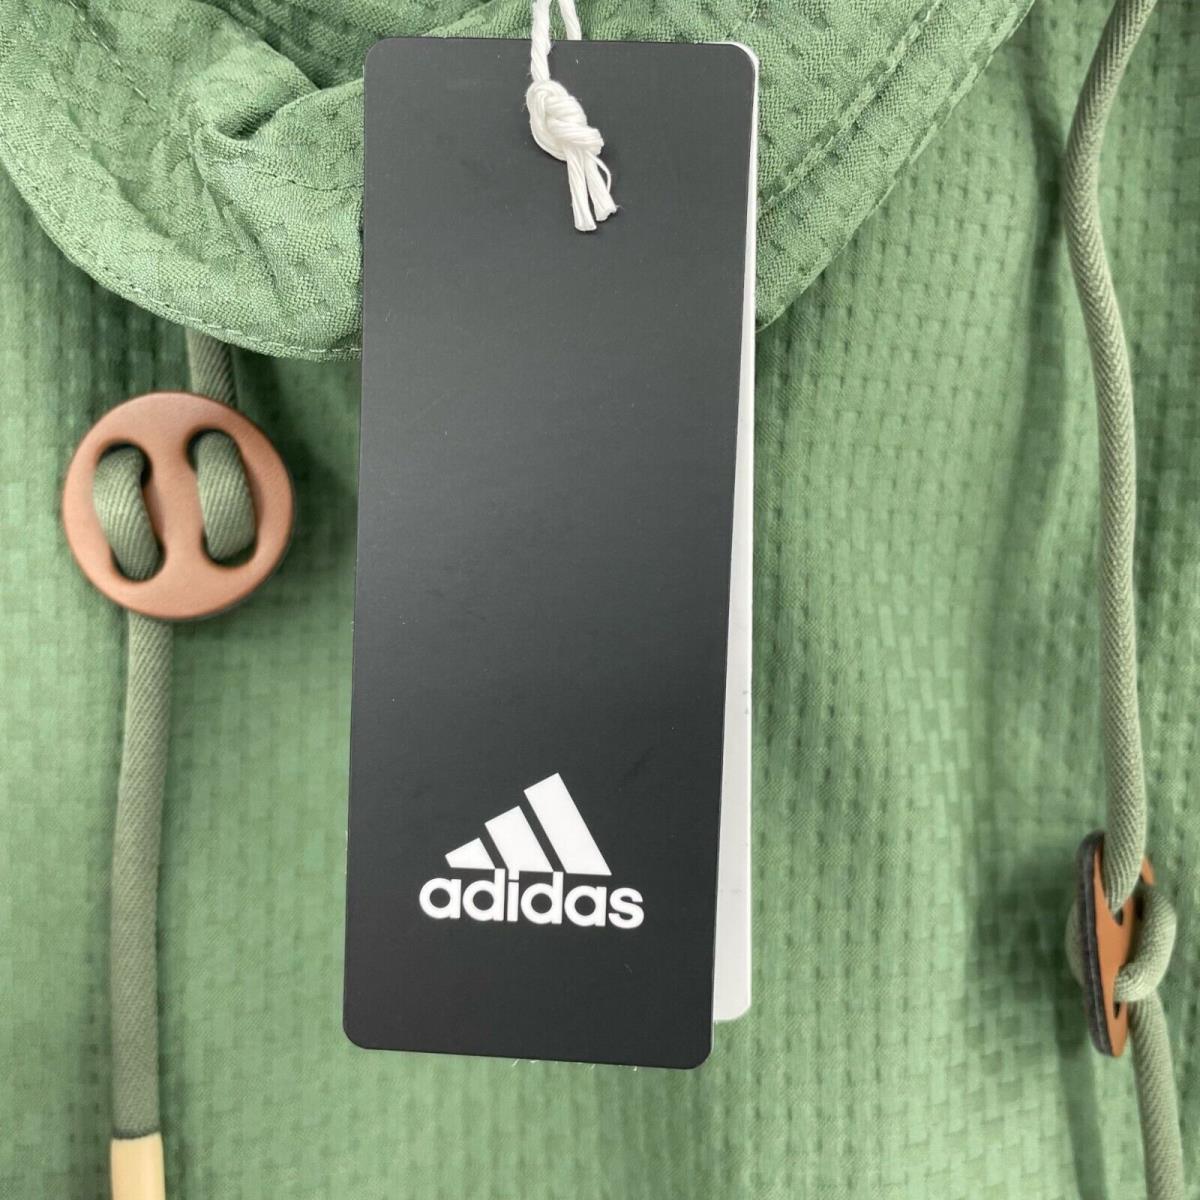 Adidas clothing  - Green 2